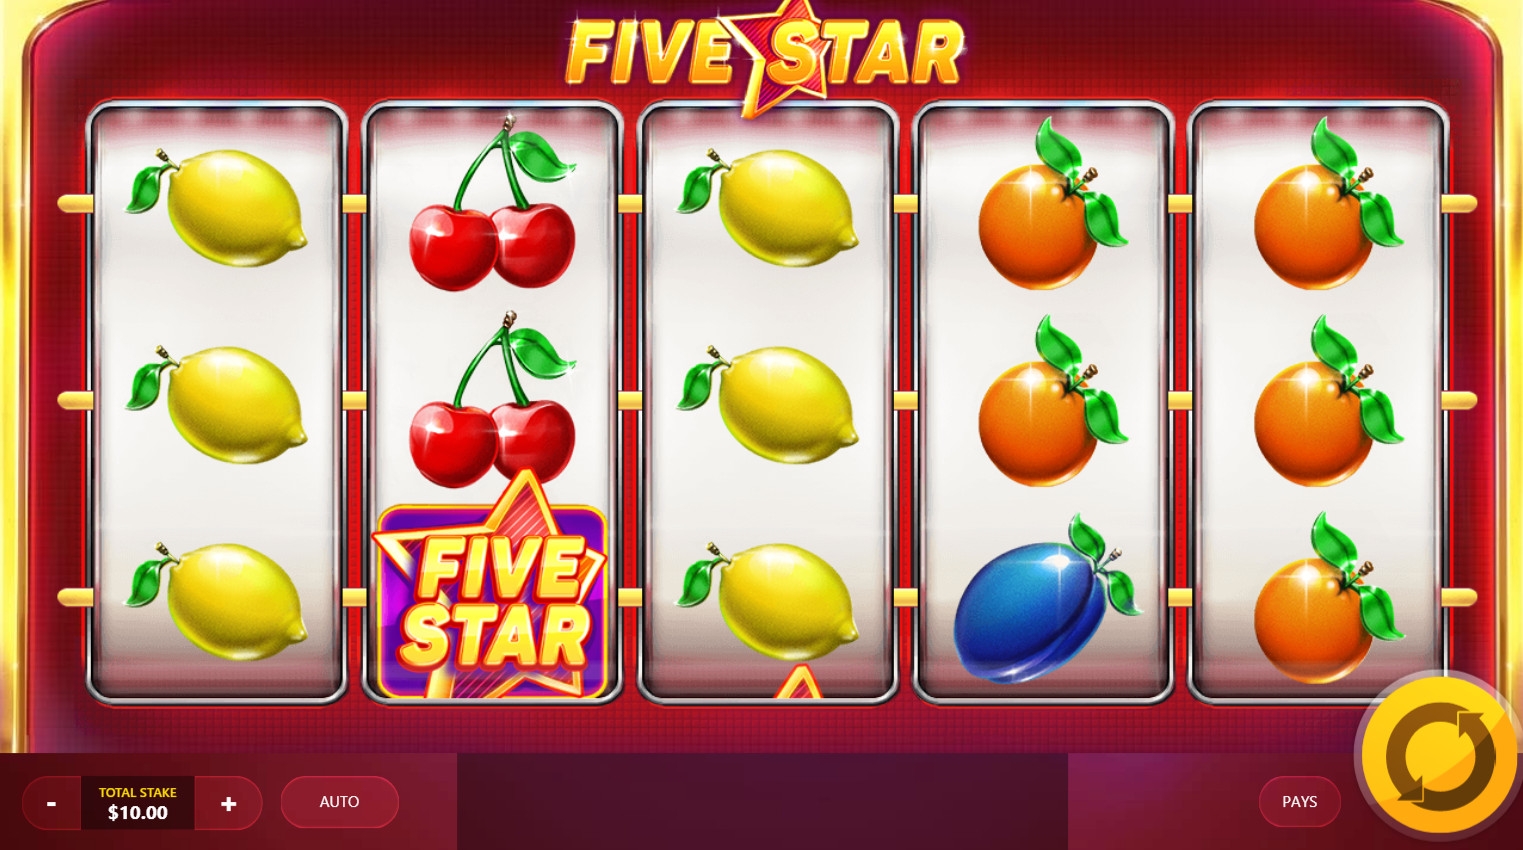 Five Star (Пятизвездочный) из раздела Игровые автоматы